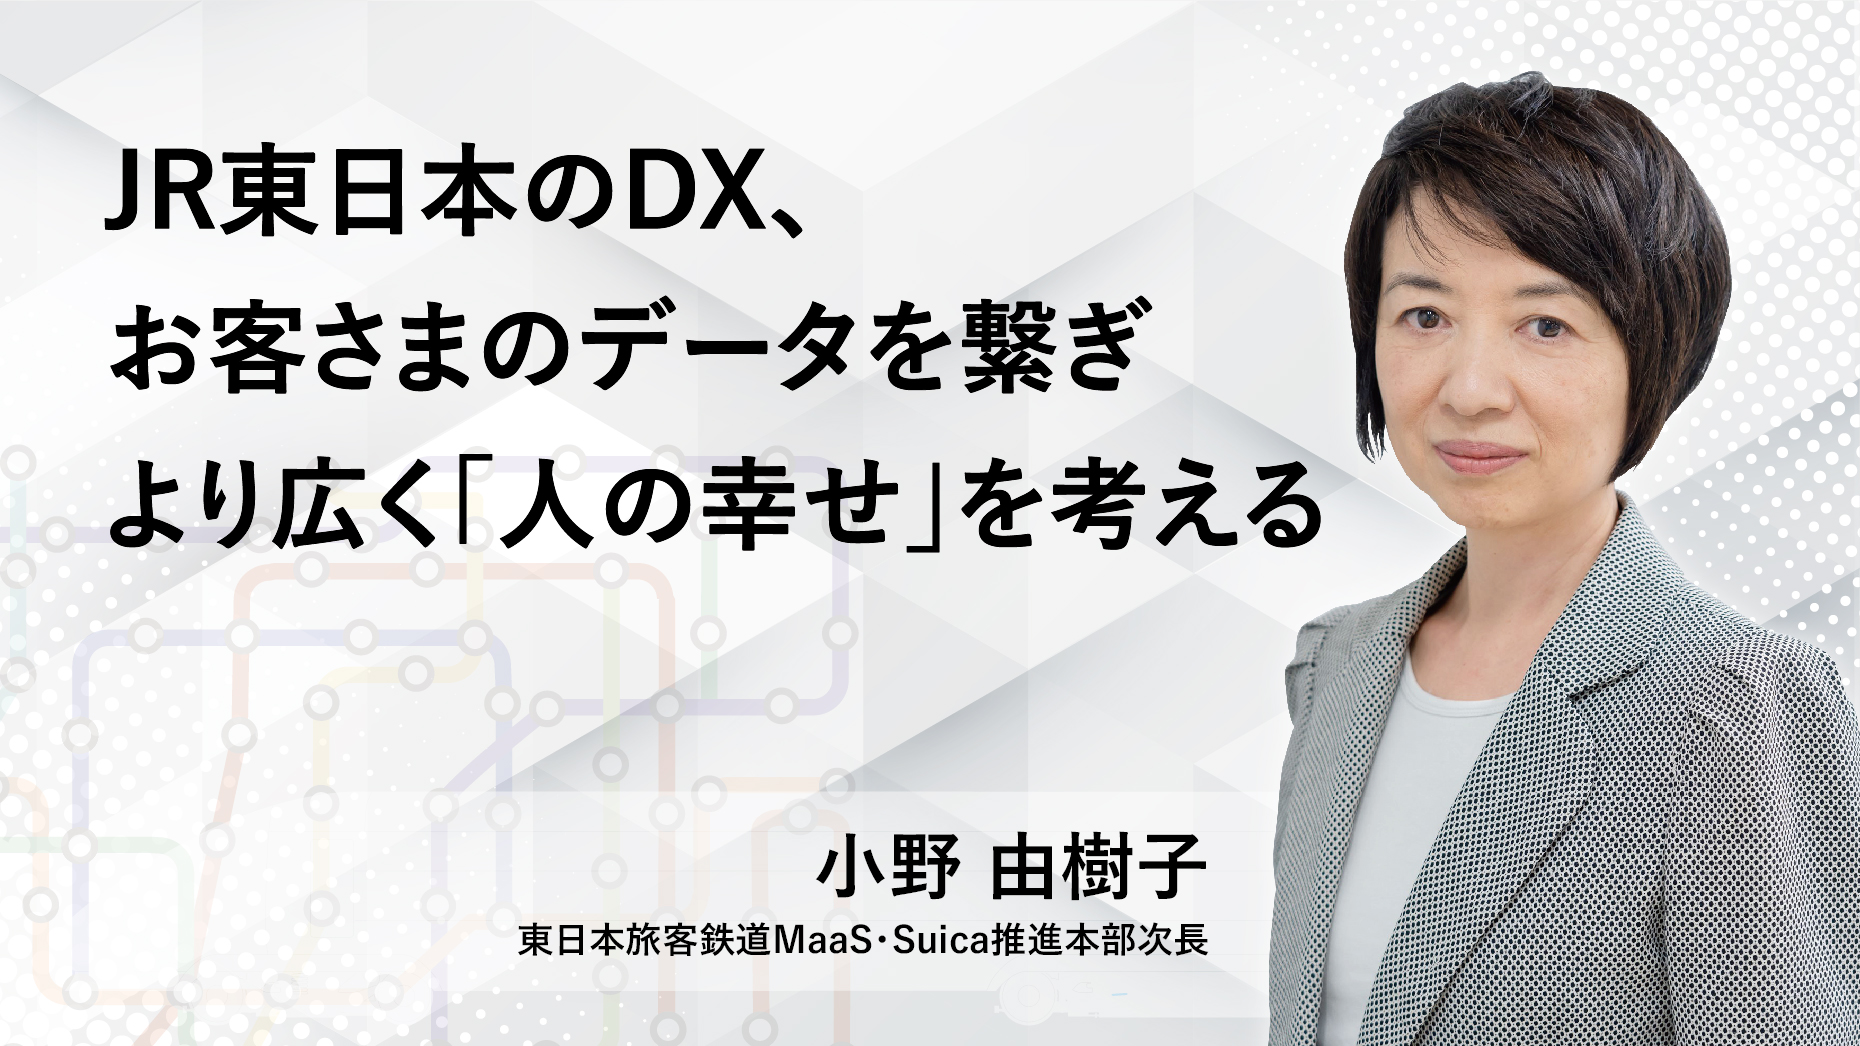 JR東日本のDX、お客さまのデータを繋ぎ、より広く「人の幸せ」を考える